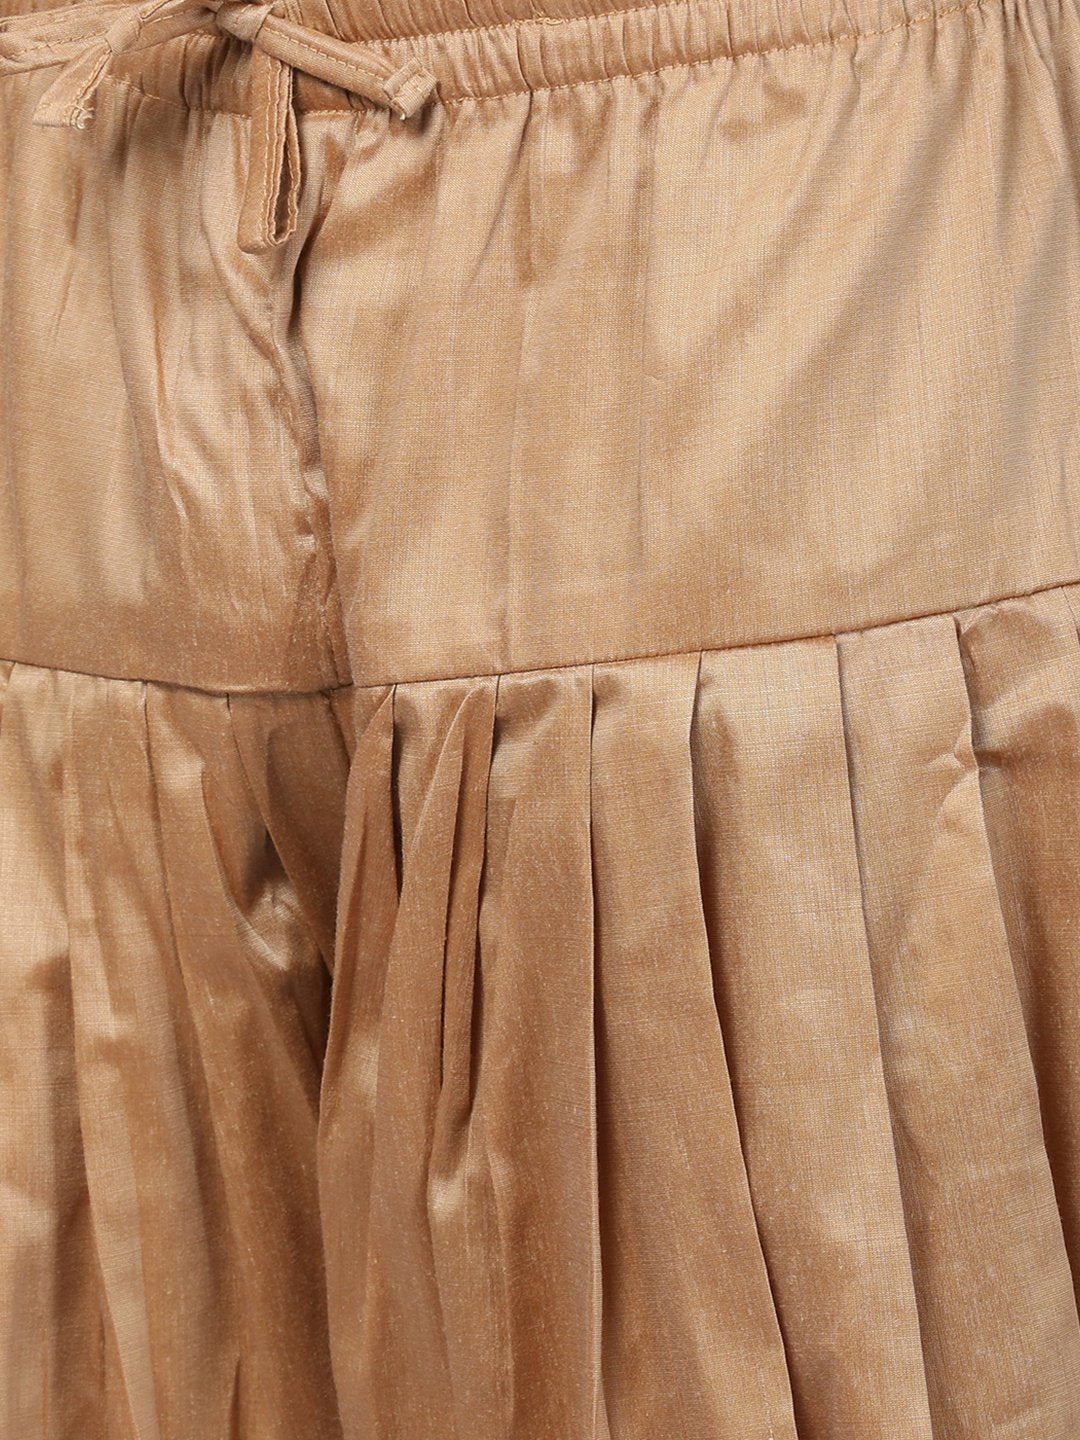 Men's Brown Cotton Blend Pathani Suit Set